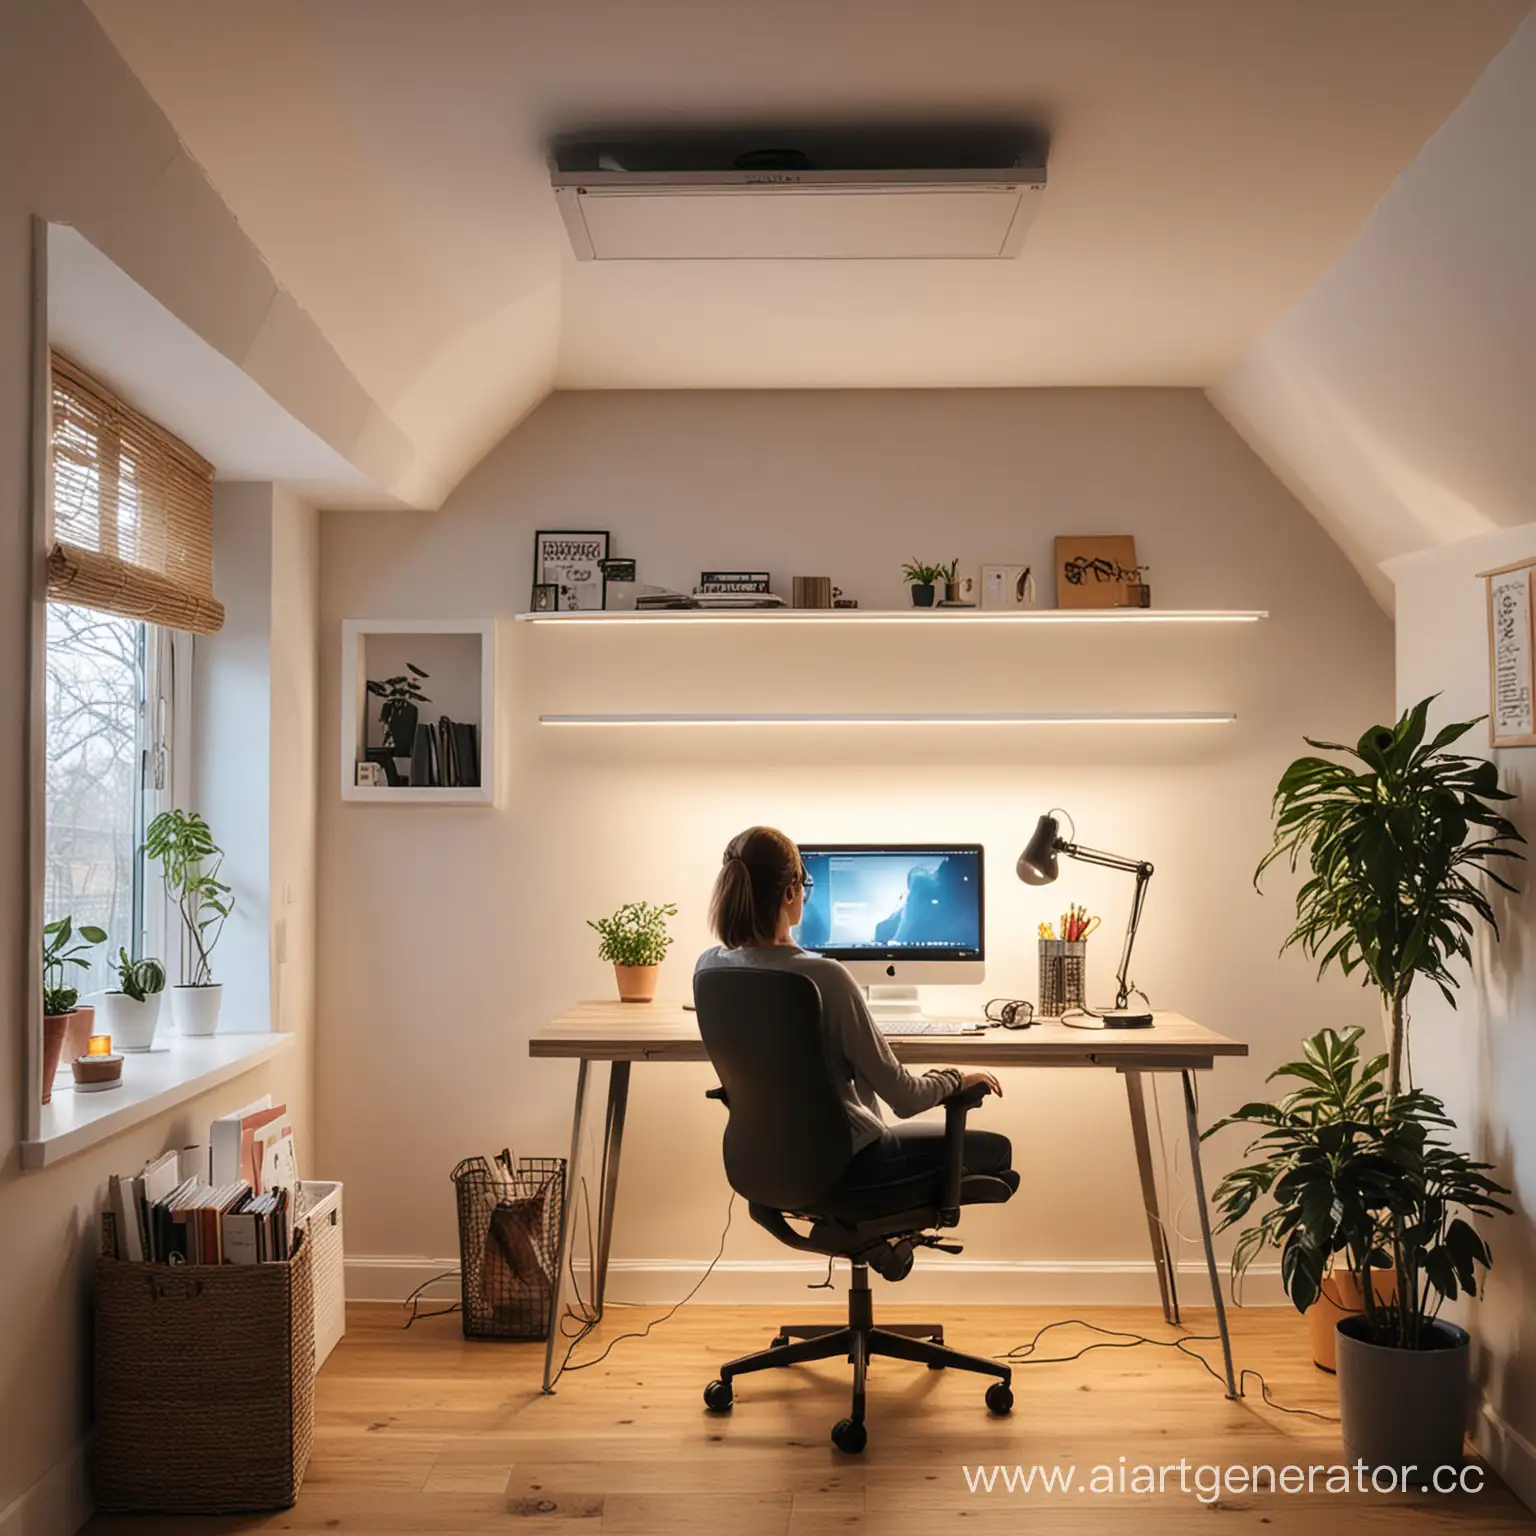 Фрилансер работает из дома за компьютерным столом, сверху натяжной потолок с хорошим освещением 